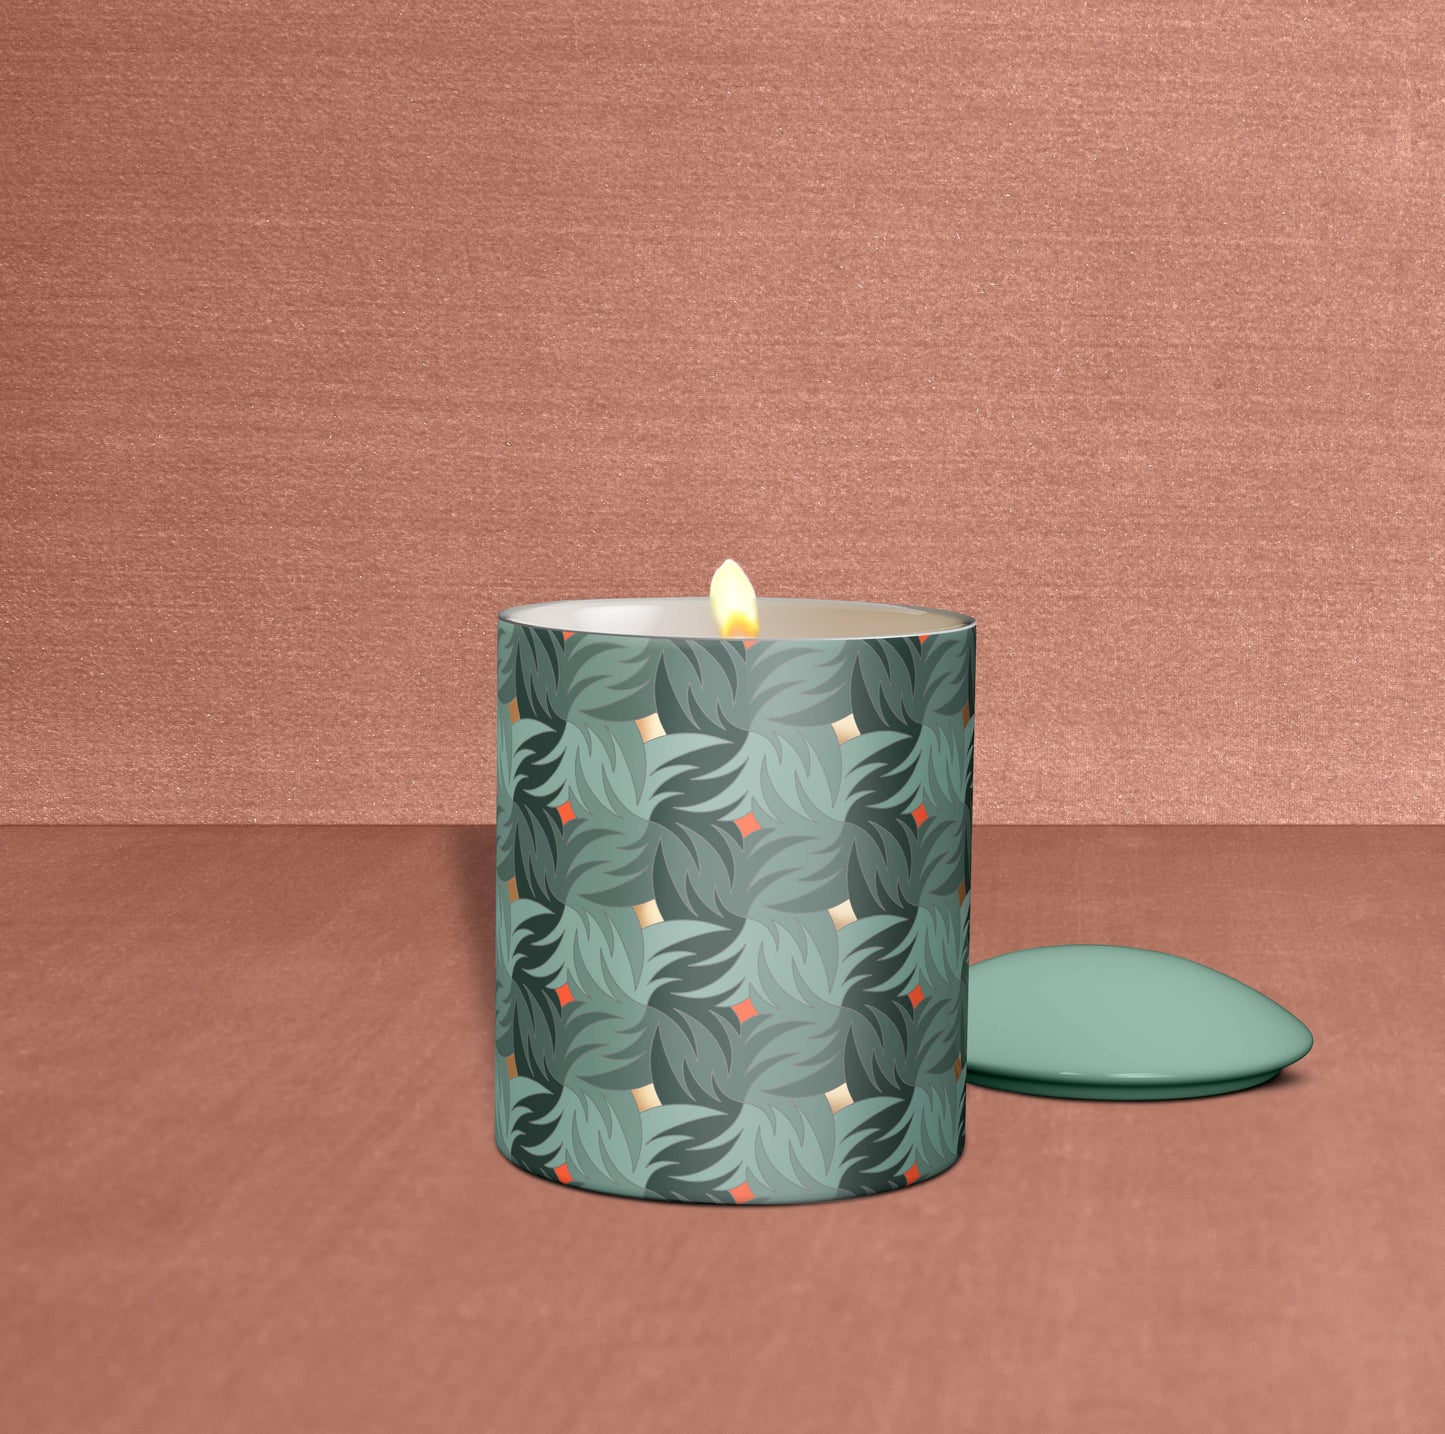 L'or de Seraphine - Garland Medium Ceramic Jar Candle